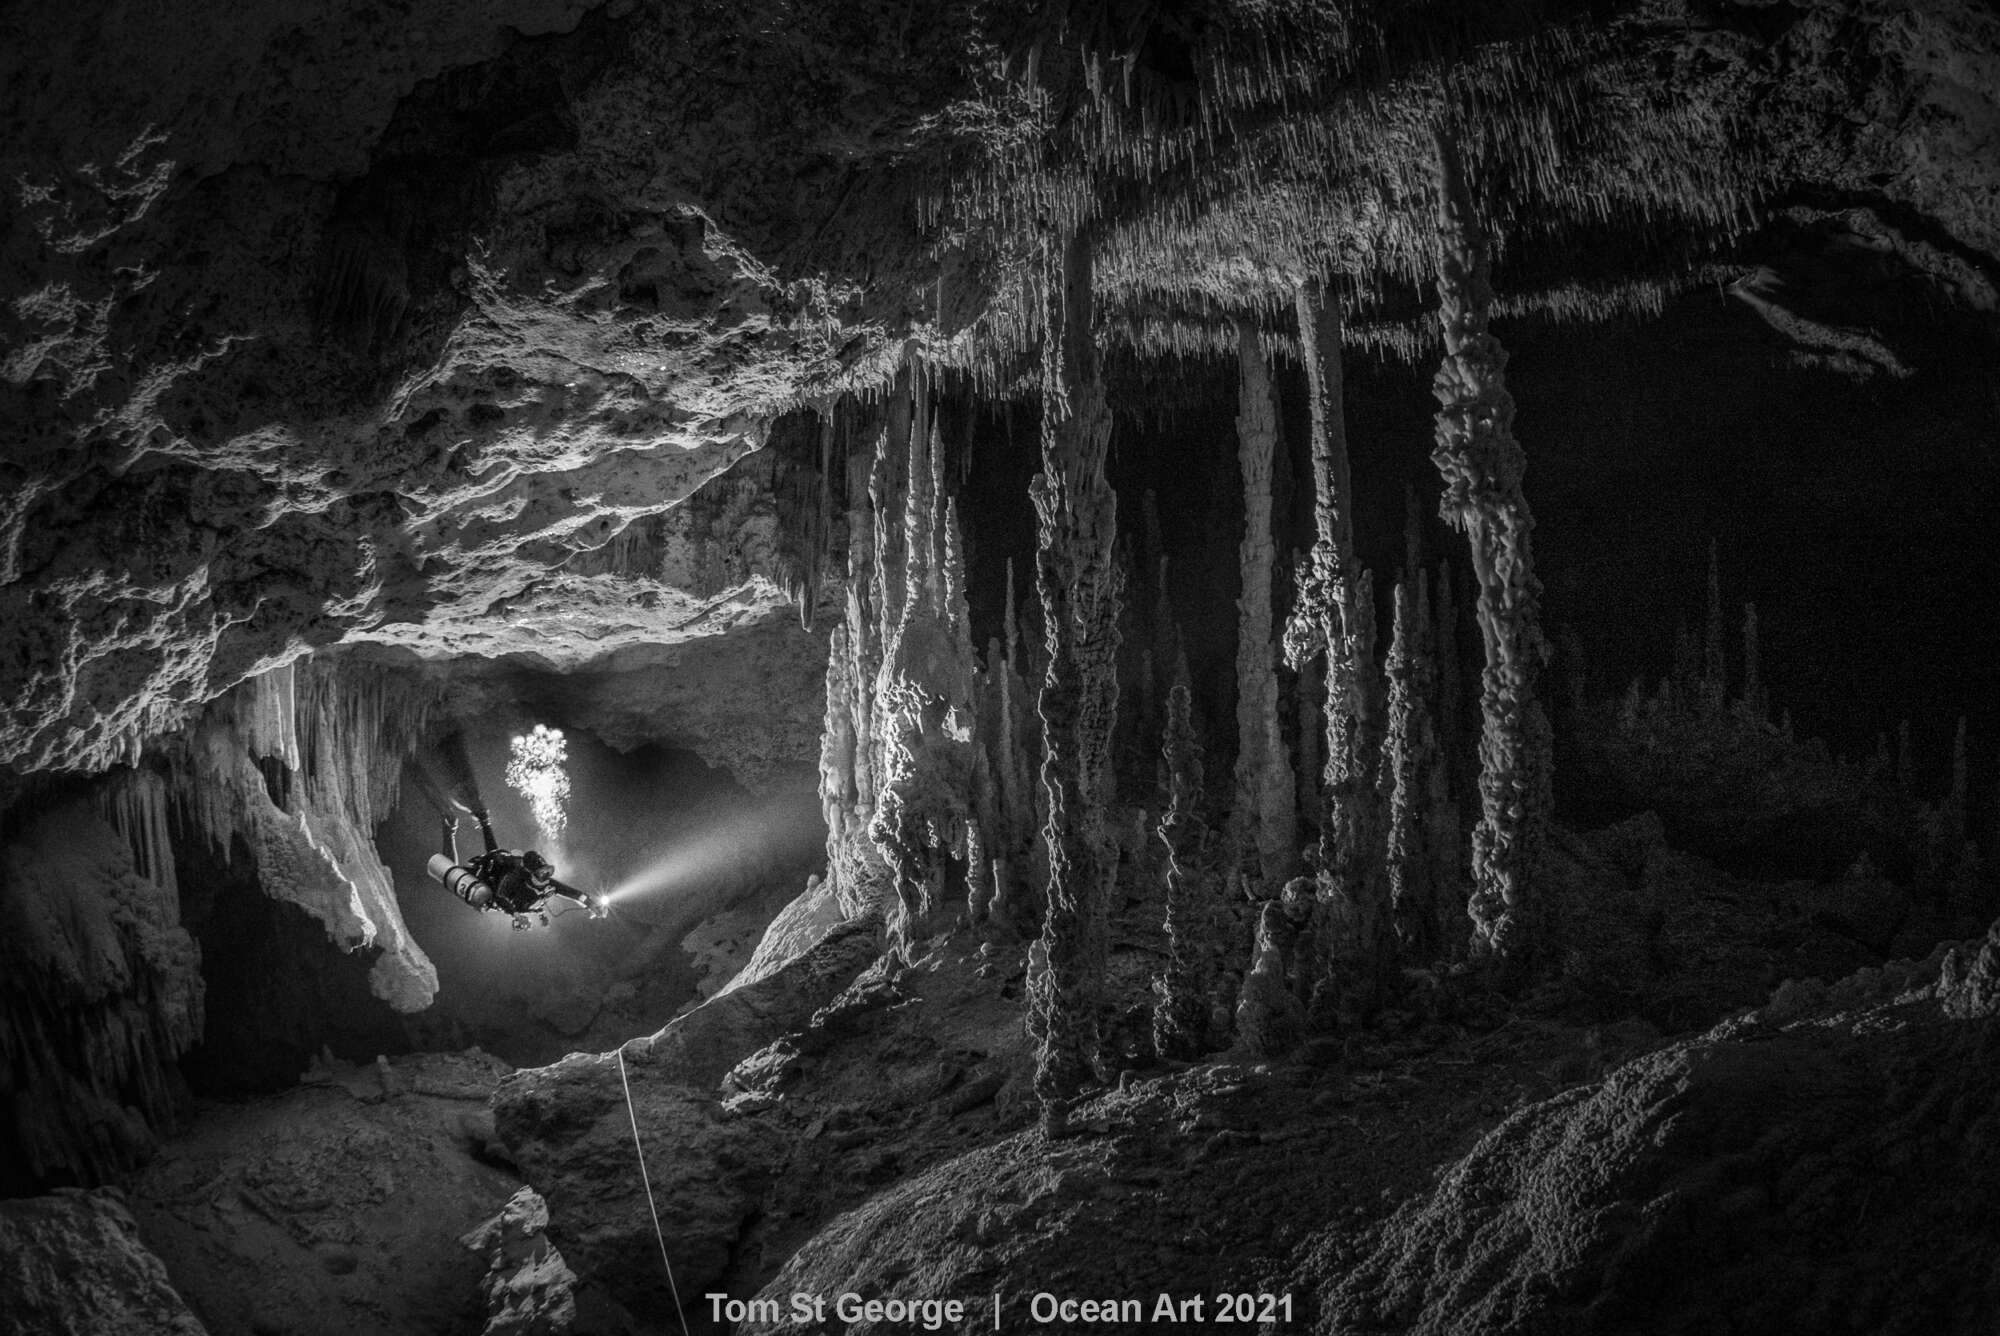 Πρώτο βραβείο στην κατηγορία «Ασπρο & Μαύρο» για την εικόνα ενός δύτη στο cenote «Zacil Ha», στο Μεξικό. Τα cenote είναι μεγάλα σπήλαια γεμάτα νερό, σαν τεράστιες φυσικές δεξαμενές, ένα φαινόμενο ιδιαίτερα εντυπωσιακό που συναντάται στην χερσόνησο του Γιουκατάν